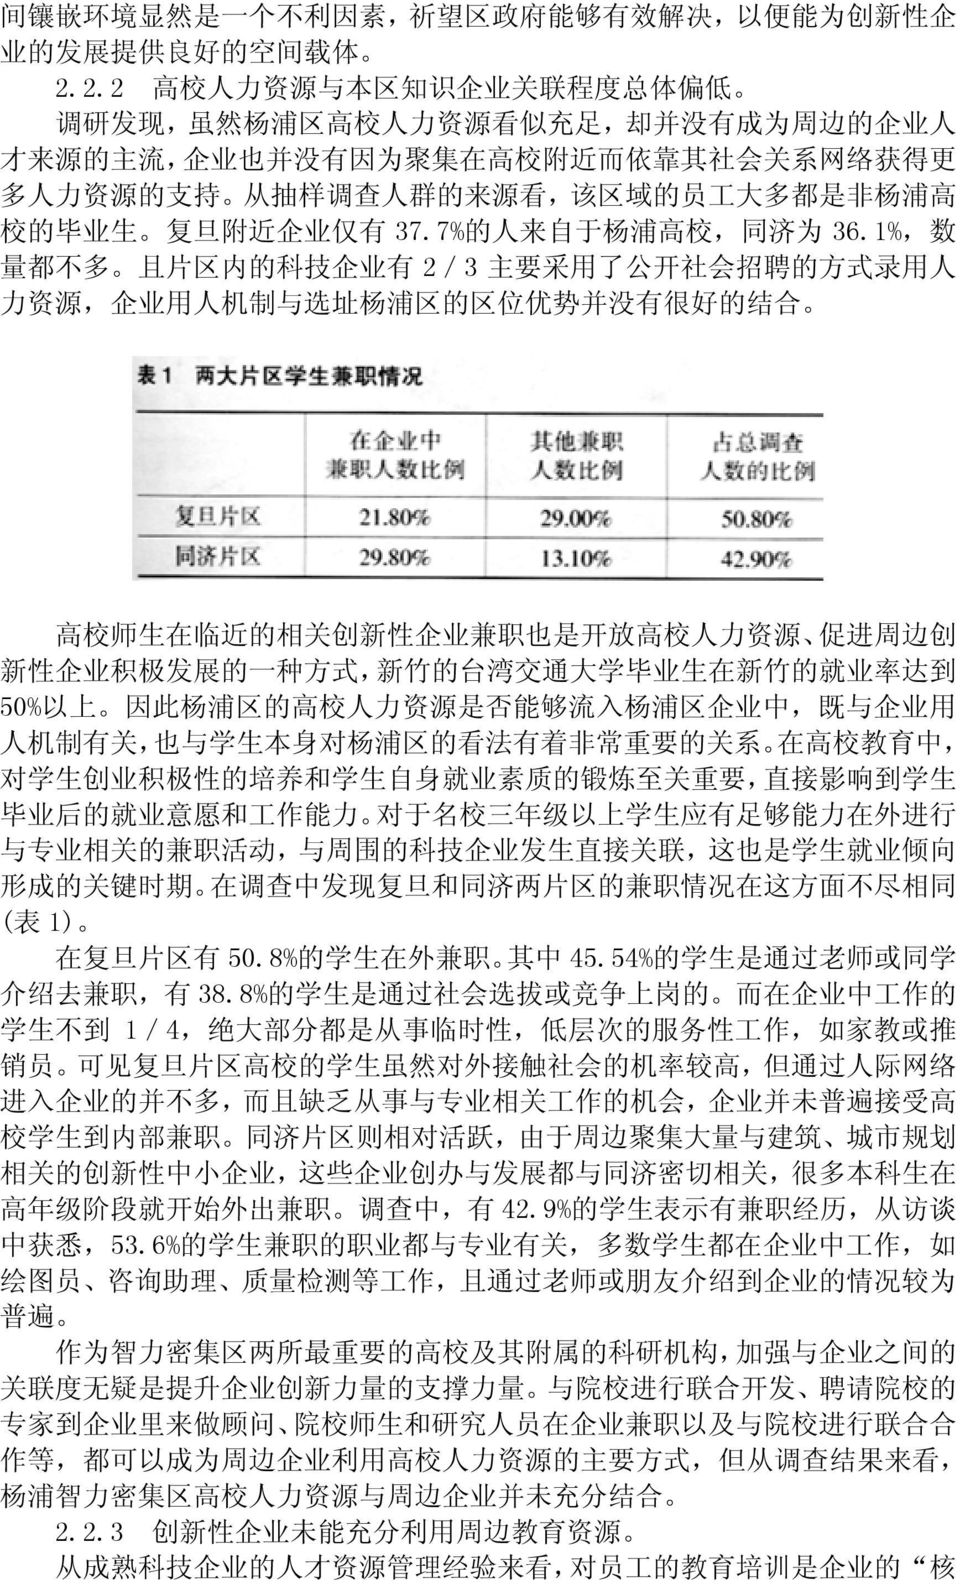 样 调 查 人 群 的 来 源 看, 该 区 域 的 员 工 大 多 都 是 非 杨 浦 高 校 的 毕 业 生 复 旦 附 近 企 业 仅 有 37.7% 的 人 来 自 于 杨 浦 高 校, 同 济 为 36.